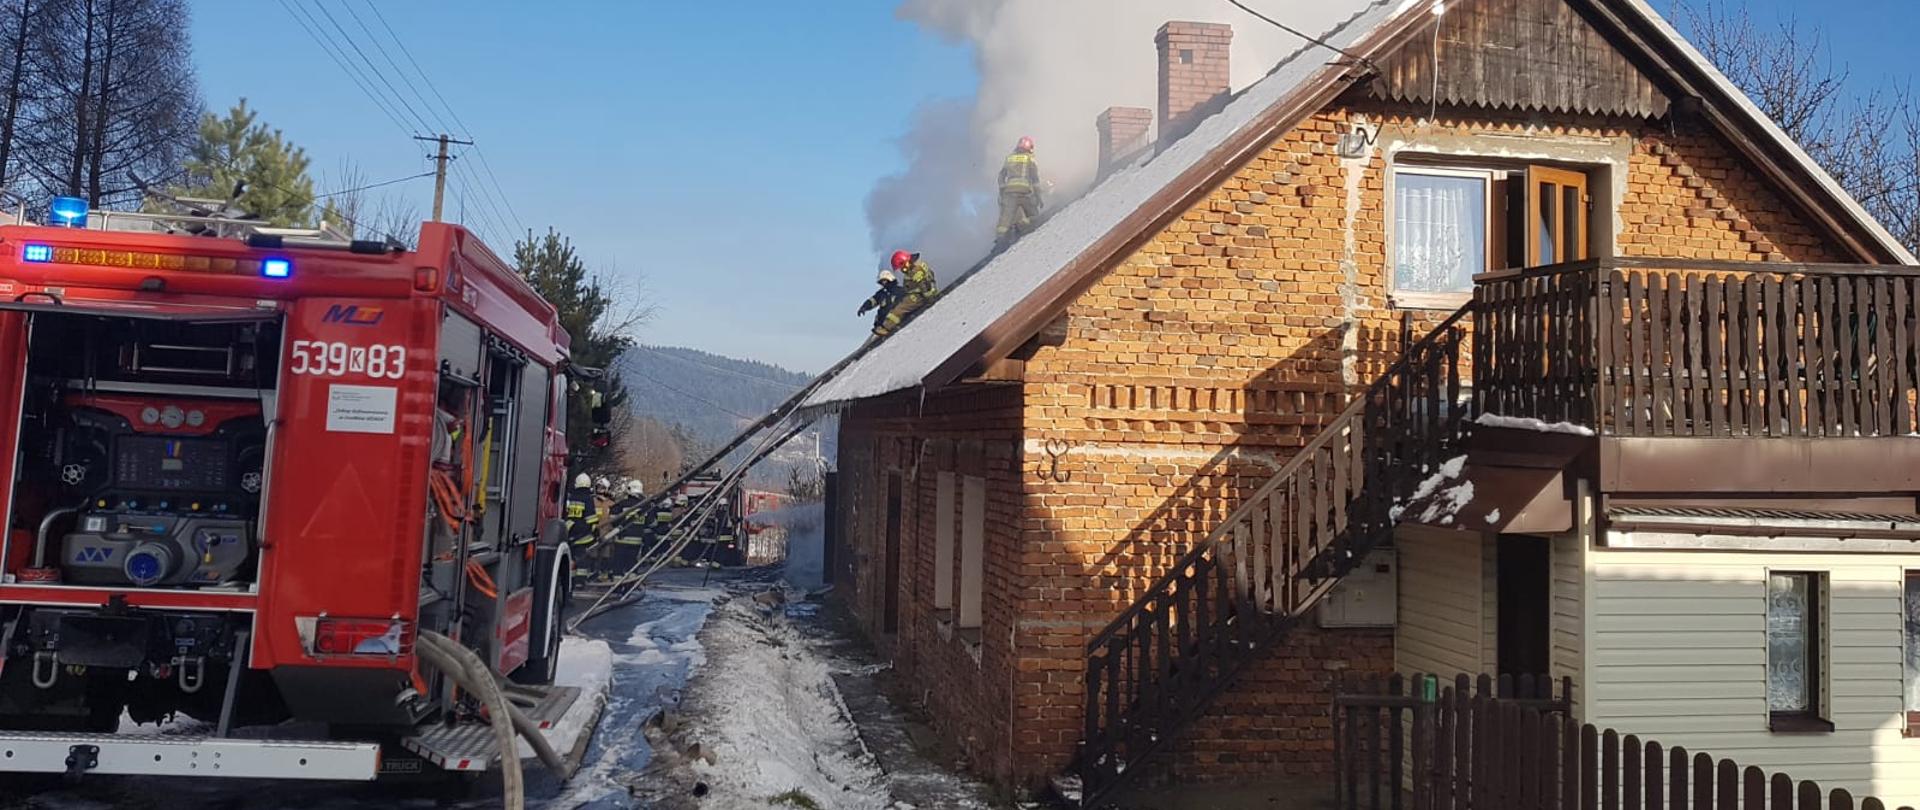 Zdjęcie przedstawia palący się budynek gospodarczy ze strony budynku mieszkalnego, z budynku wydobywa się dużo dymu. Strażacy na dachu walczą z ogniem, próbując uratować część mieszkalną. Na zdjęciu widać samochód pożarniczy podający wodę do pożaru.